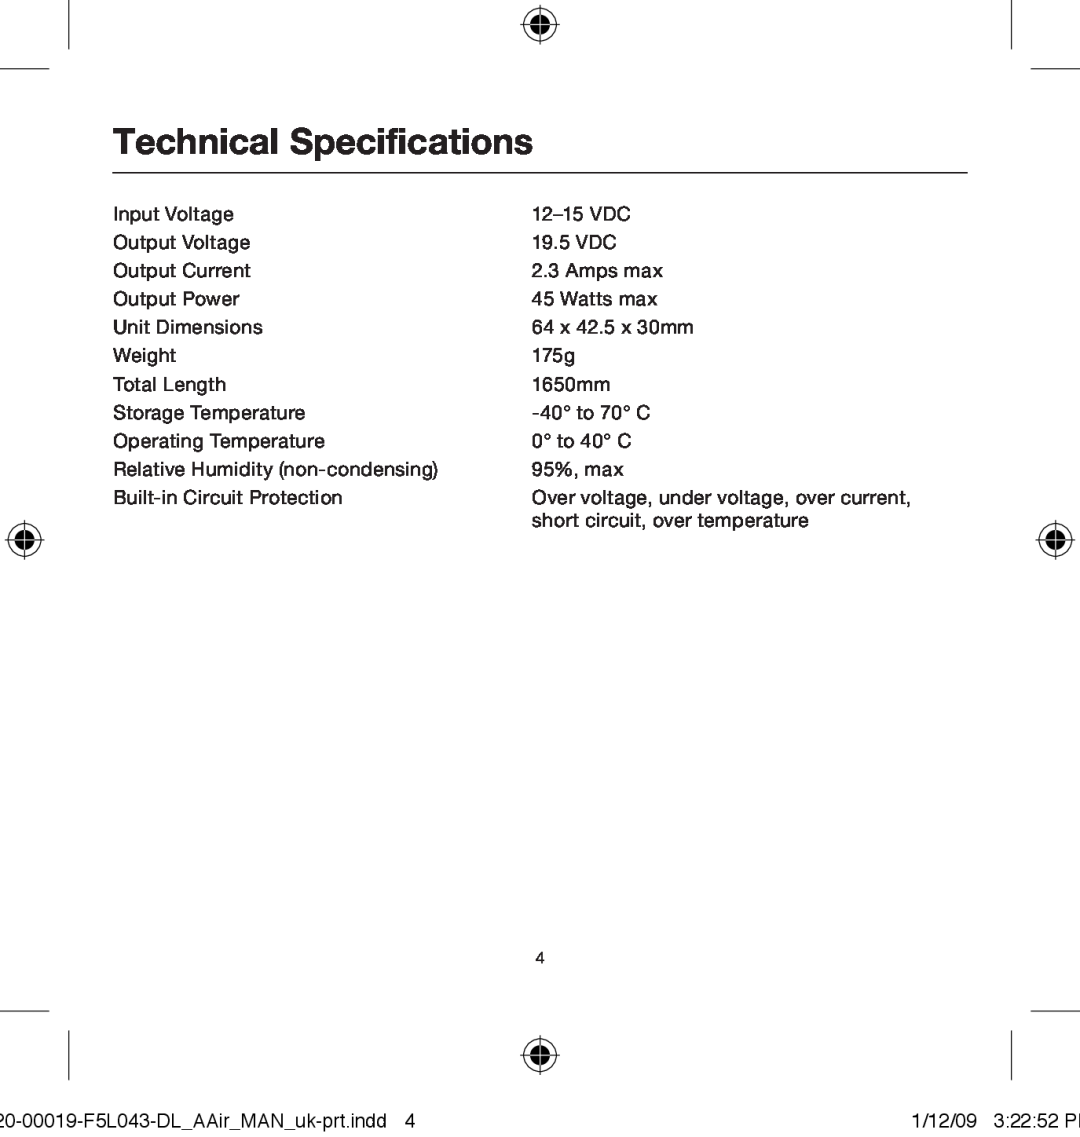 Belkin 0-00019-F5L043 user manual Technical Specifications 